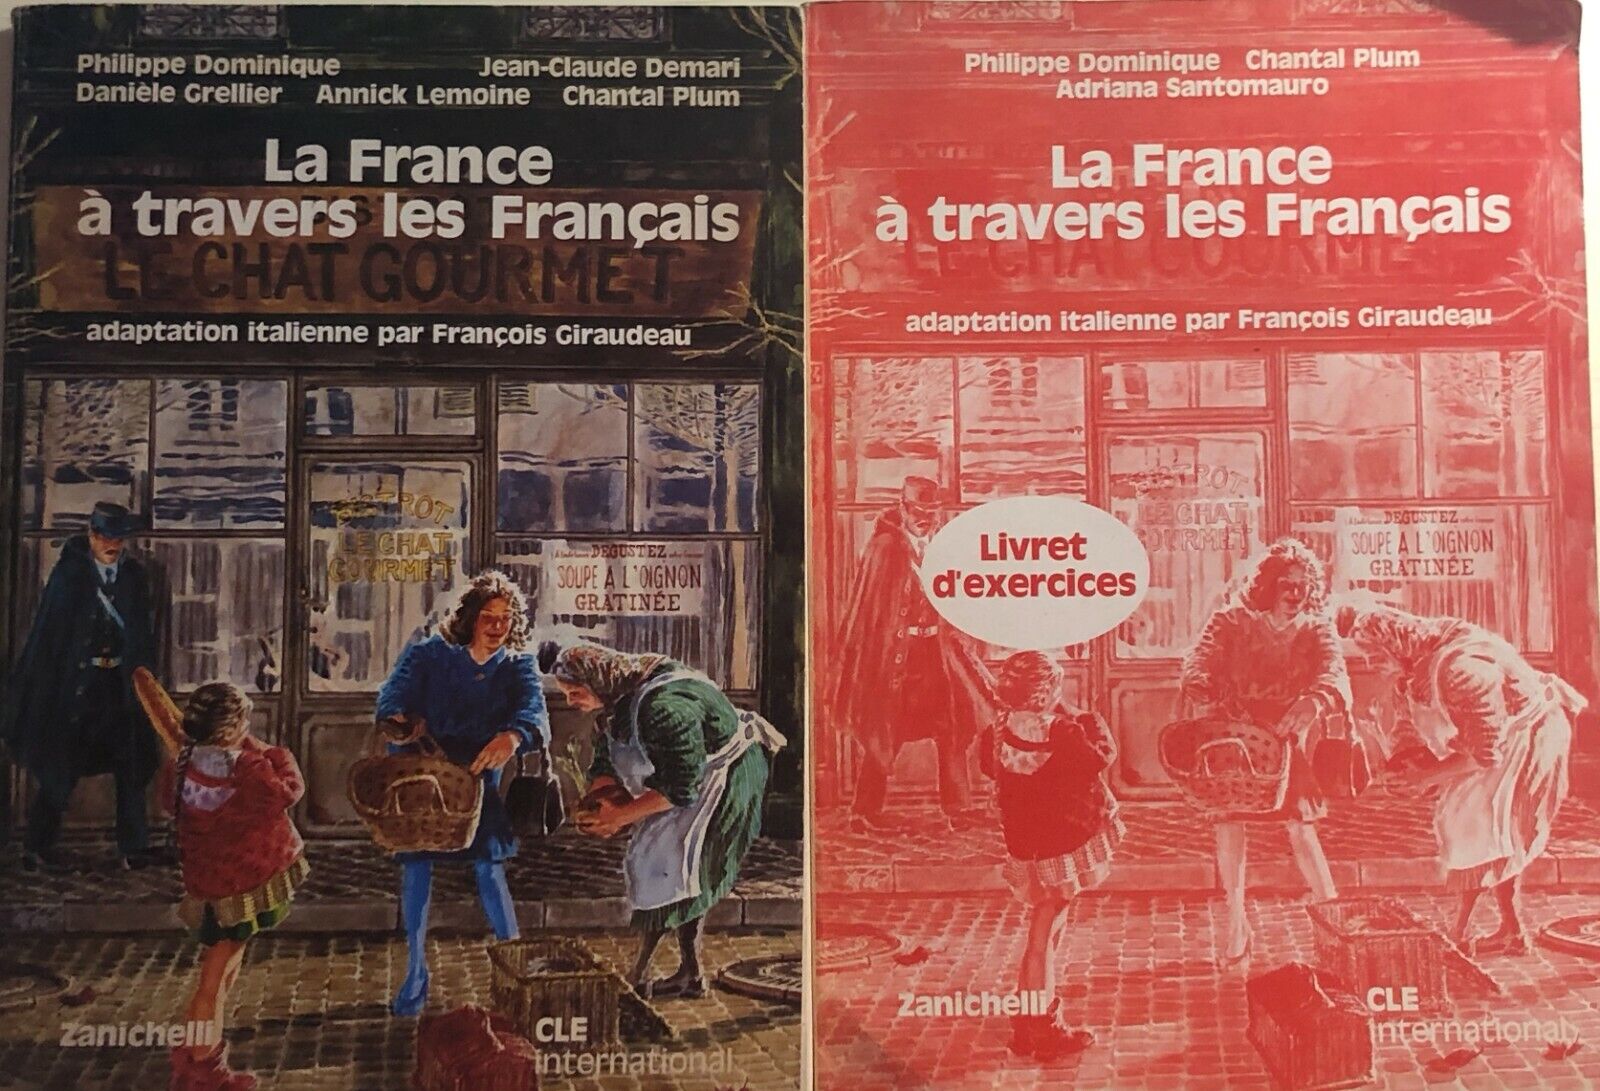 La France ? travers les Francais+Livret d'exercices di Aa.vv., 1986, Zanichelli